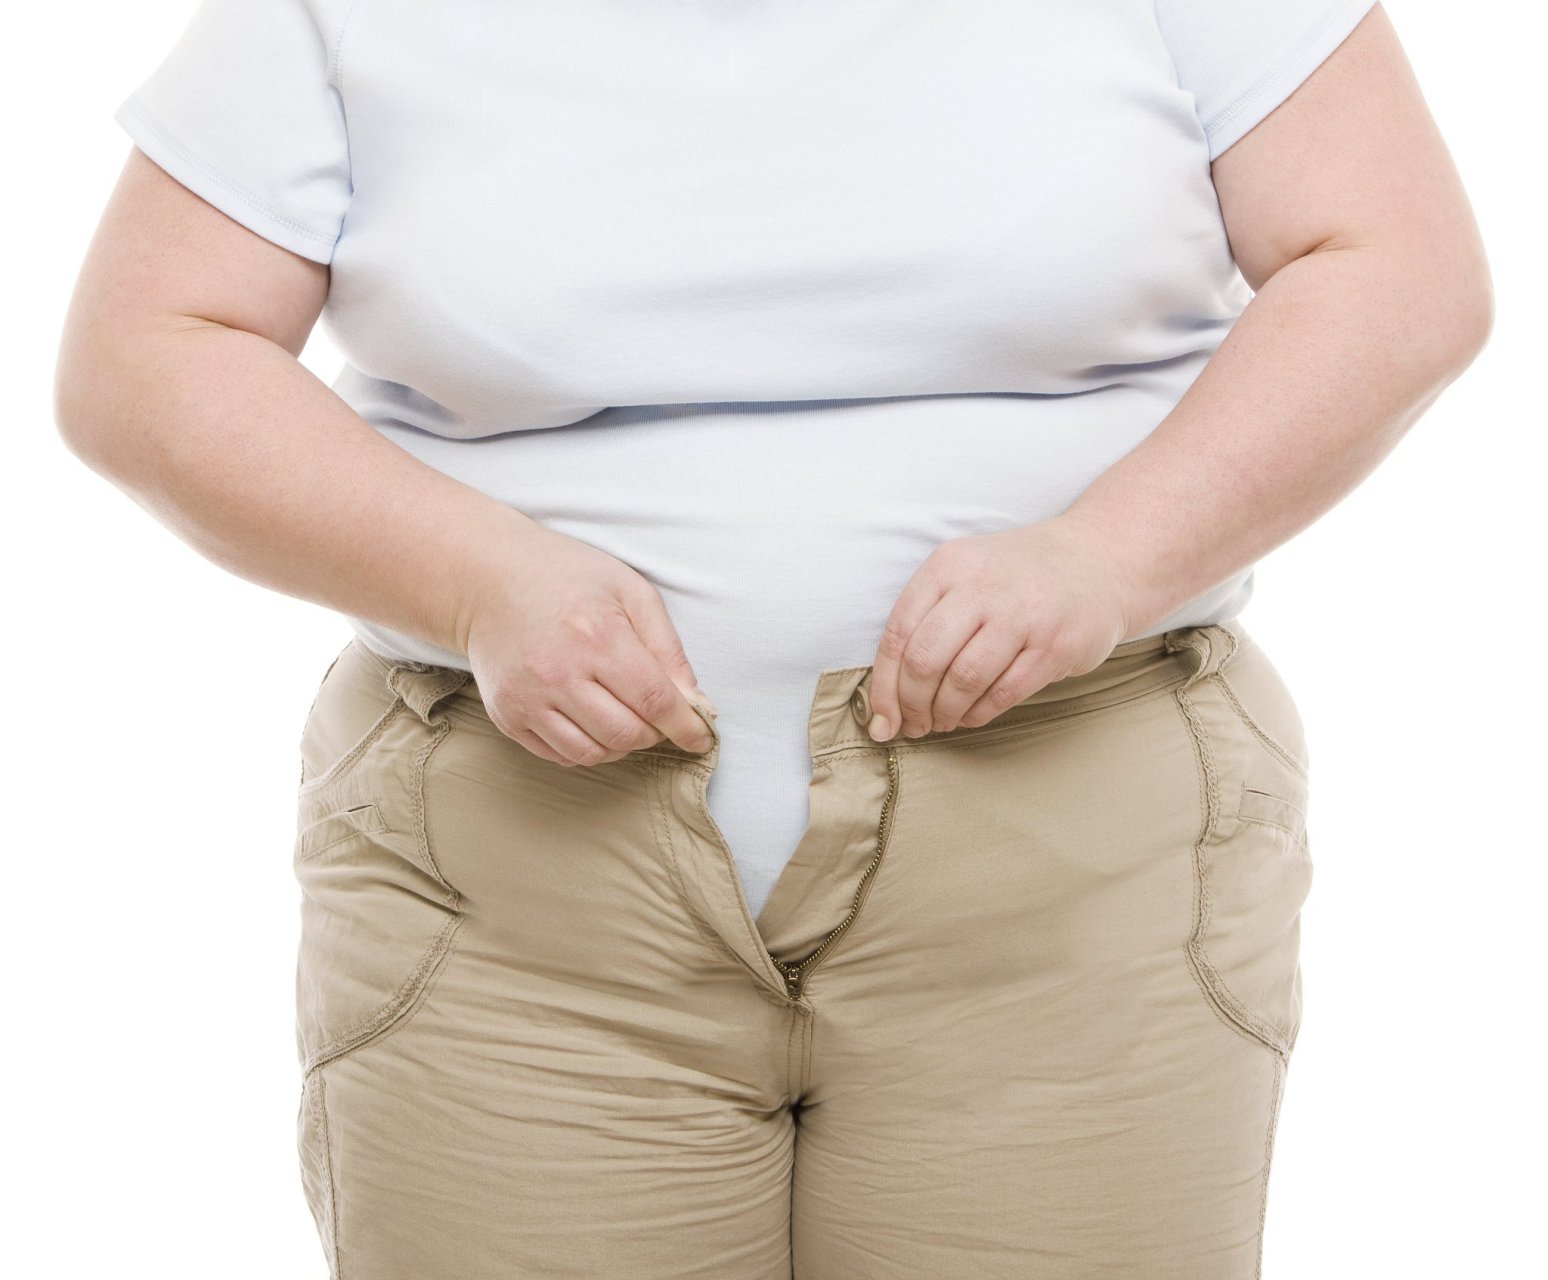 对于女性而言,小肚子鼓起来要注意腹部肥胖,当女性的腰围超过85cm